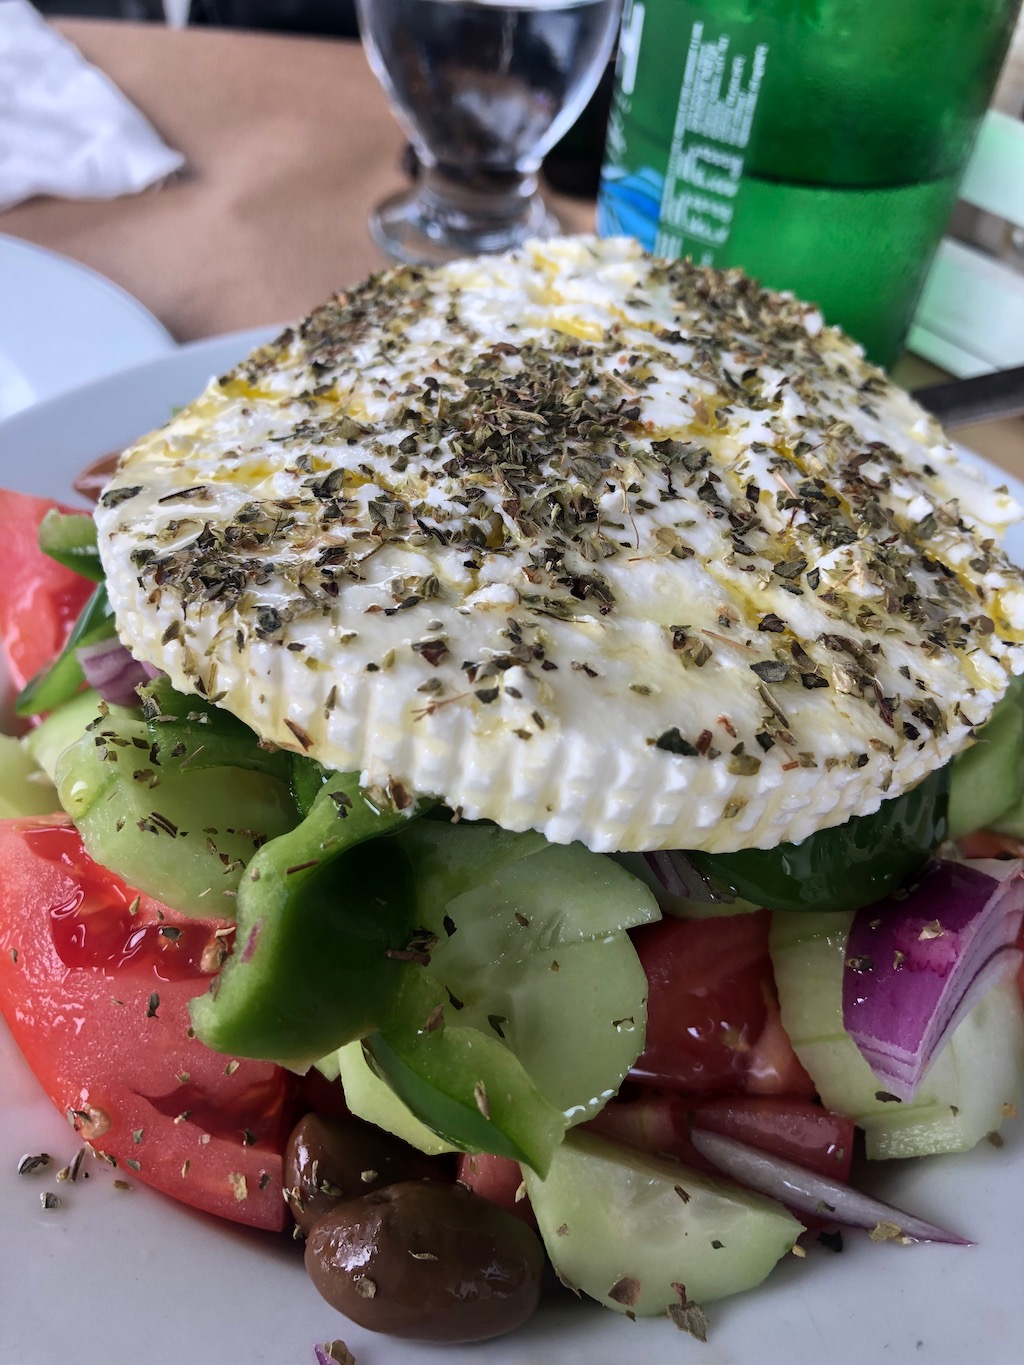 Greek Salad with Feta